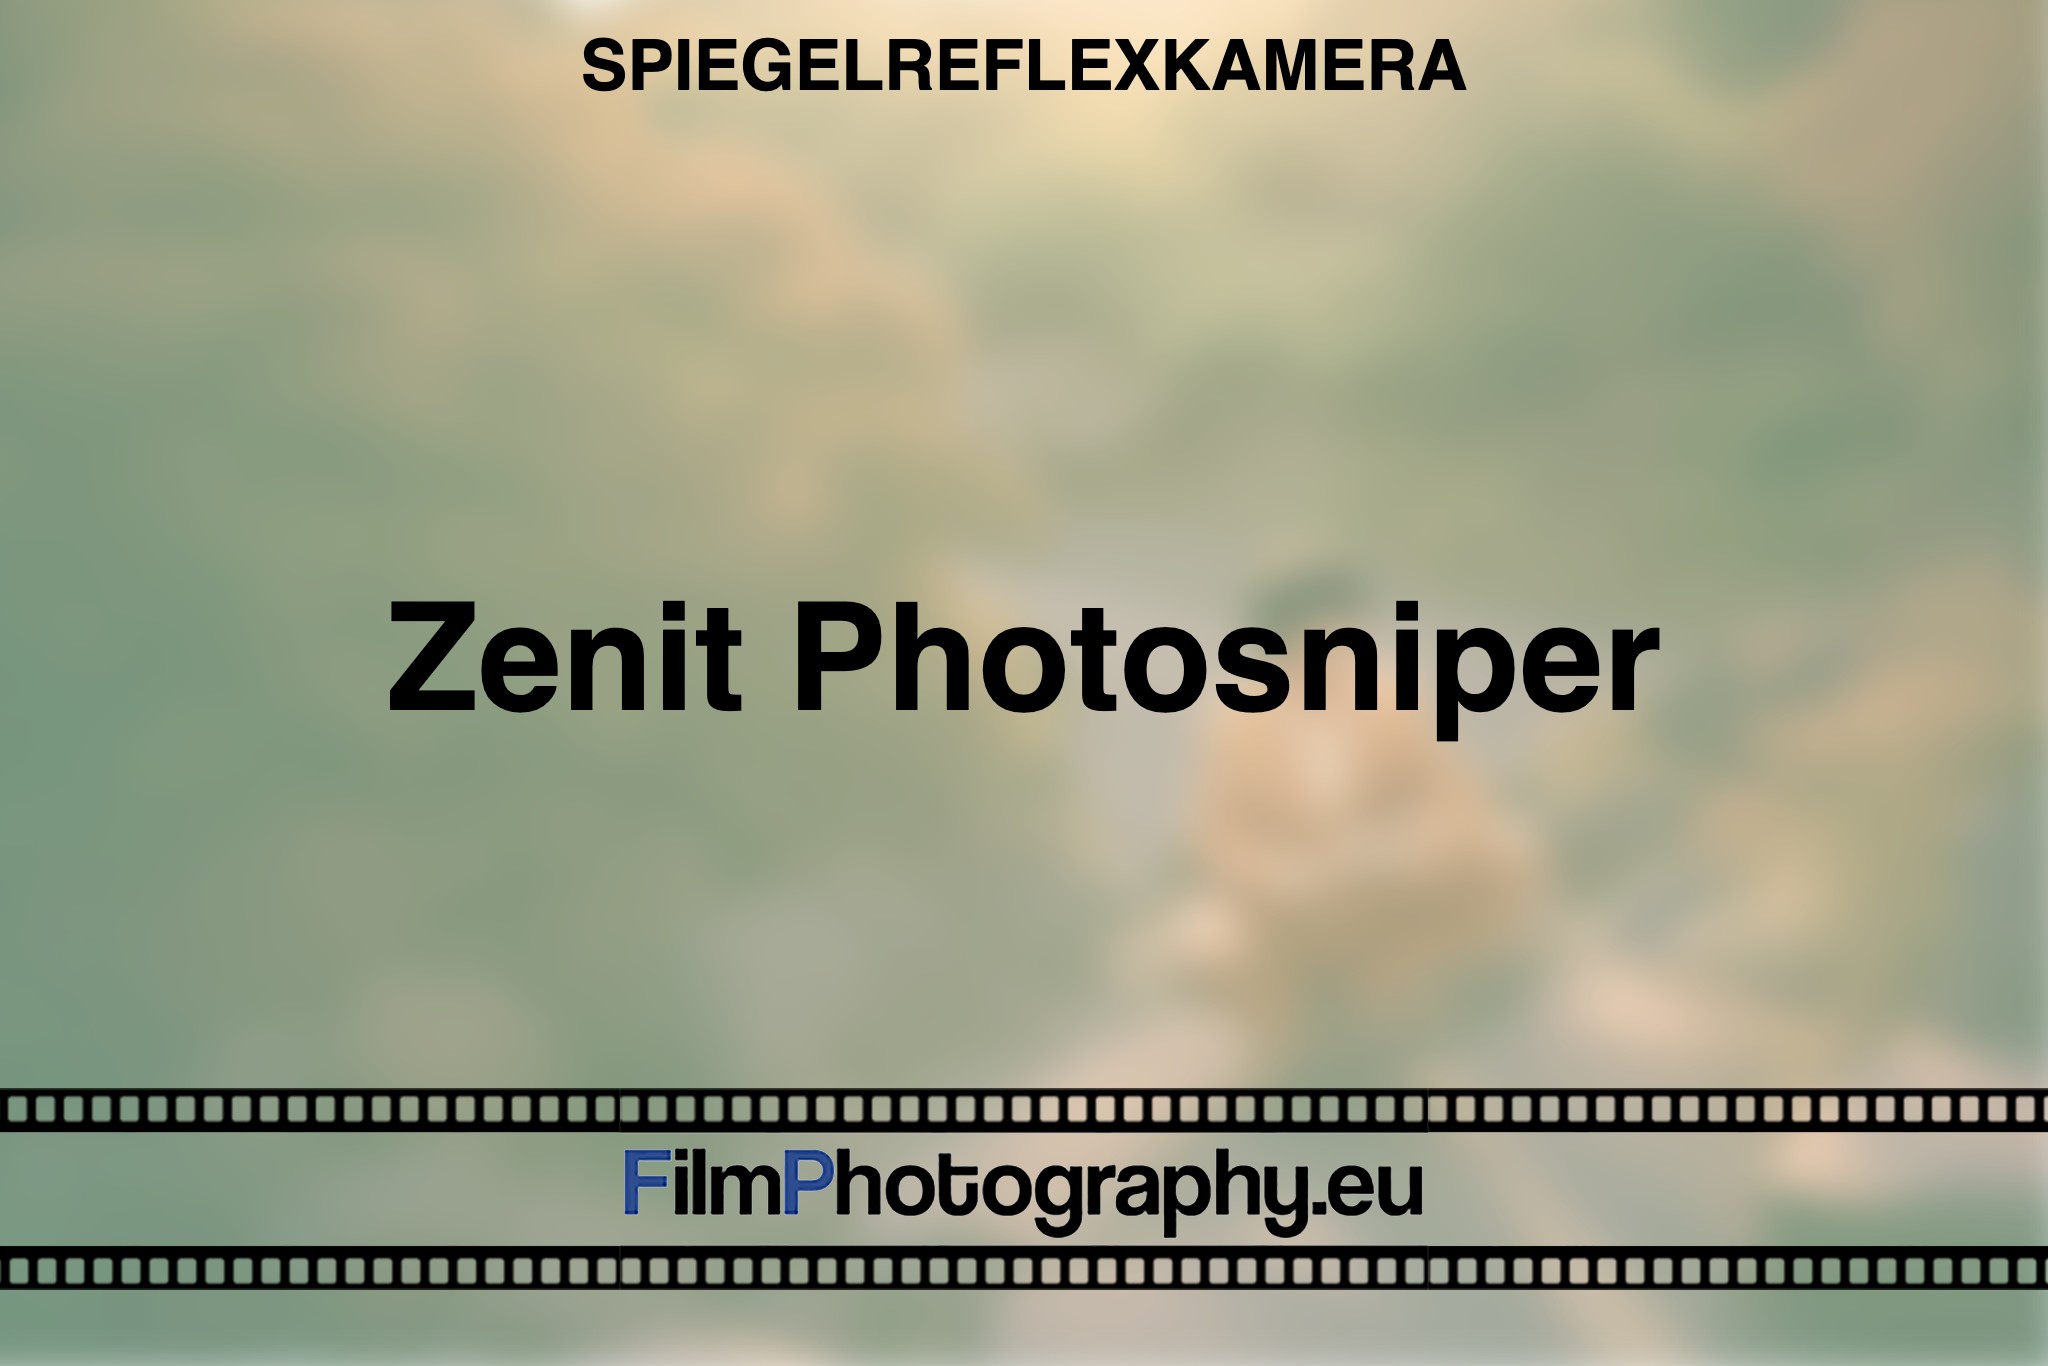 zenit-photosniper-spiegelreflexkamera-bnv